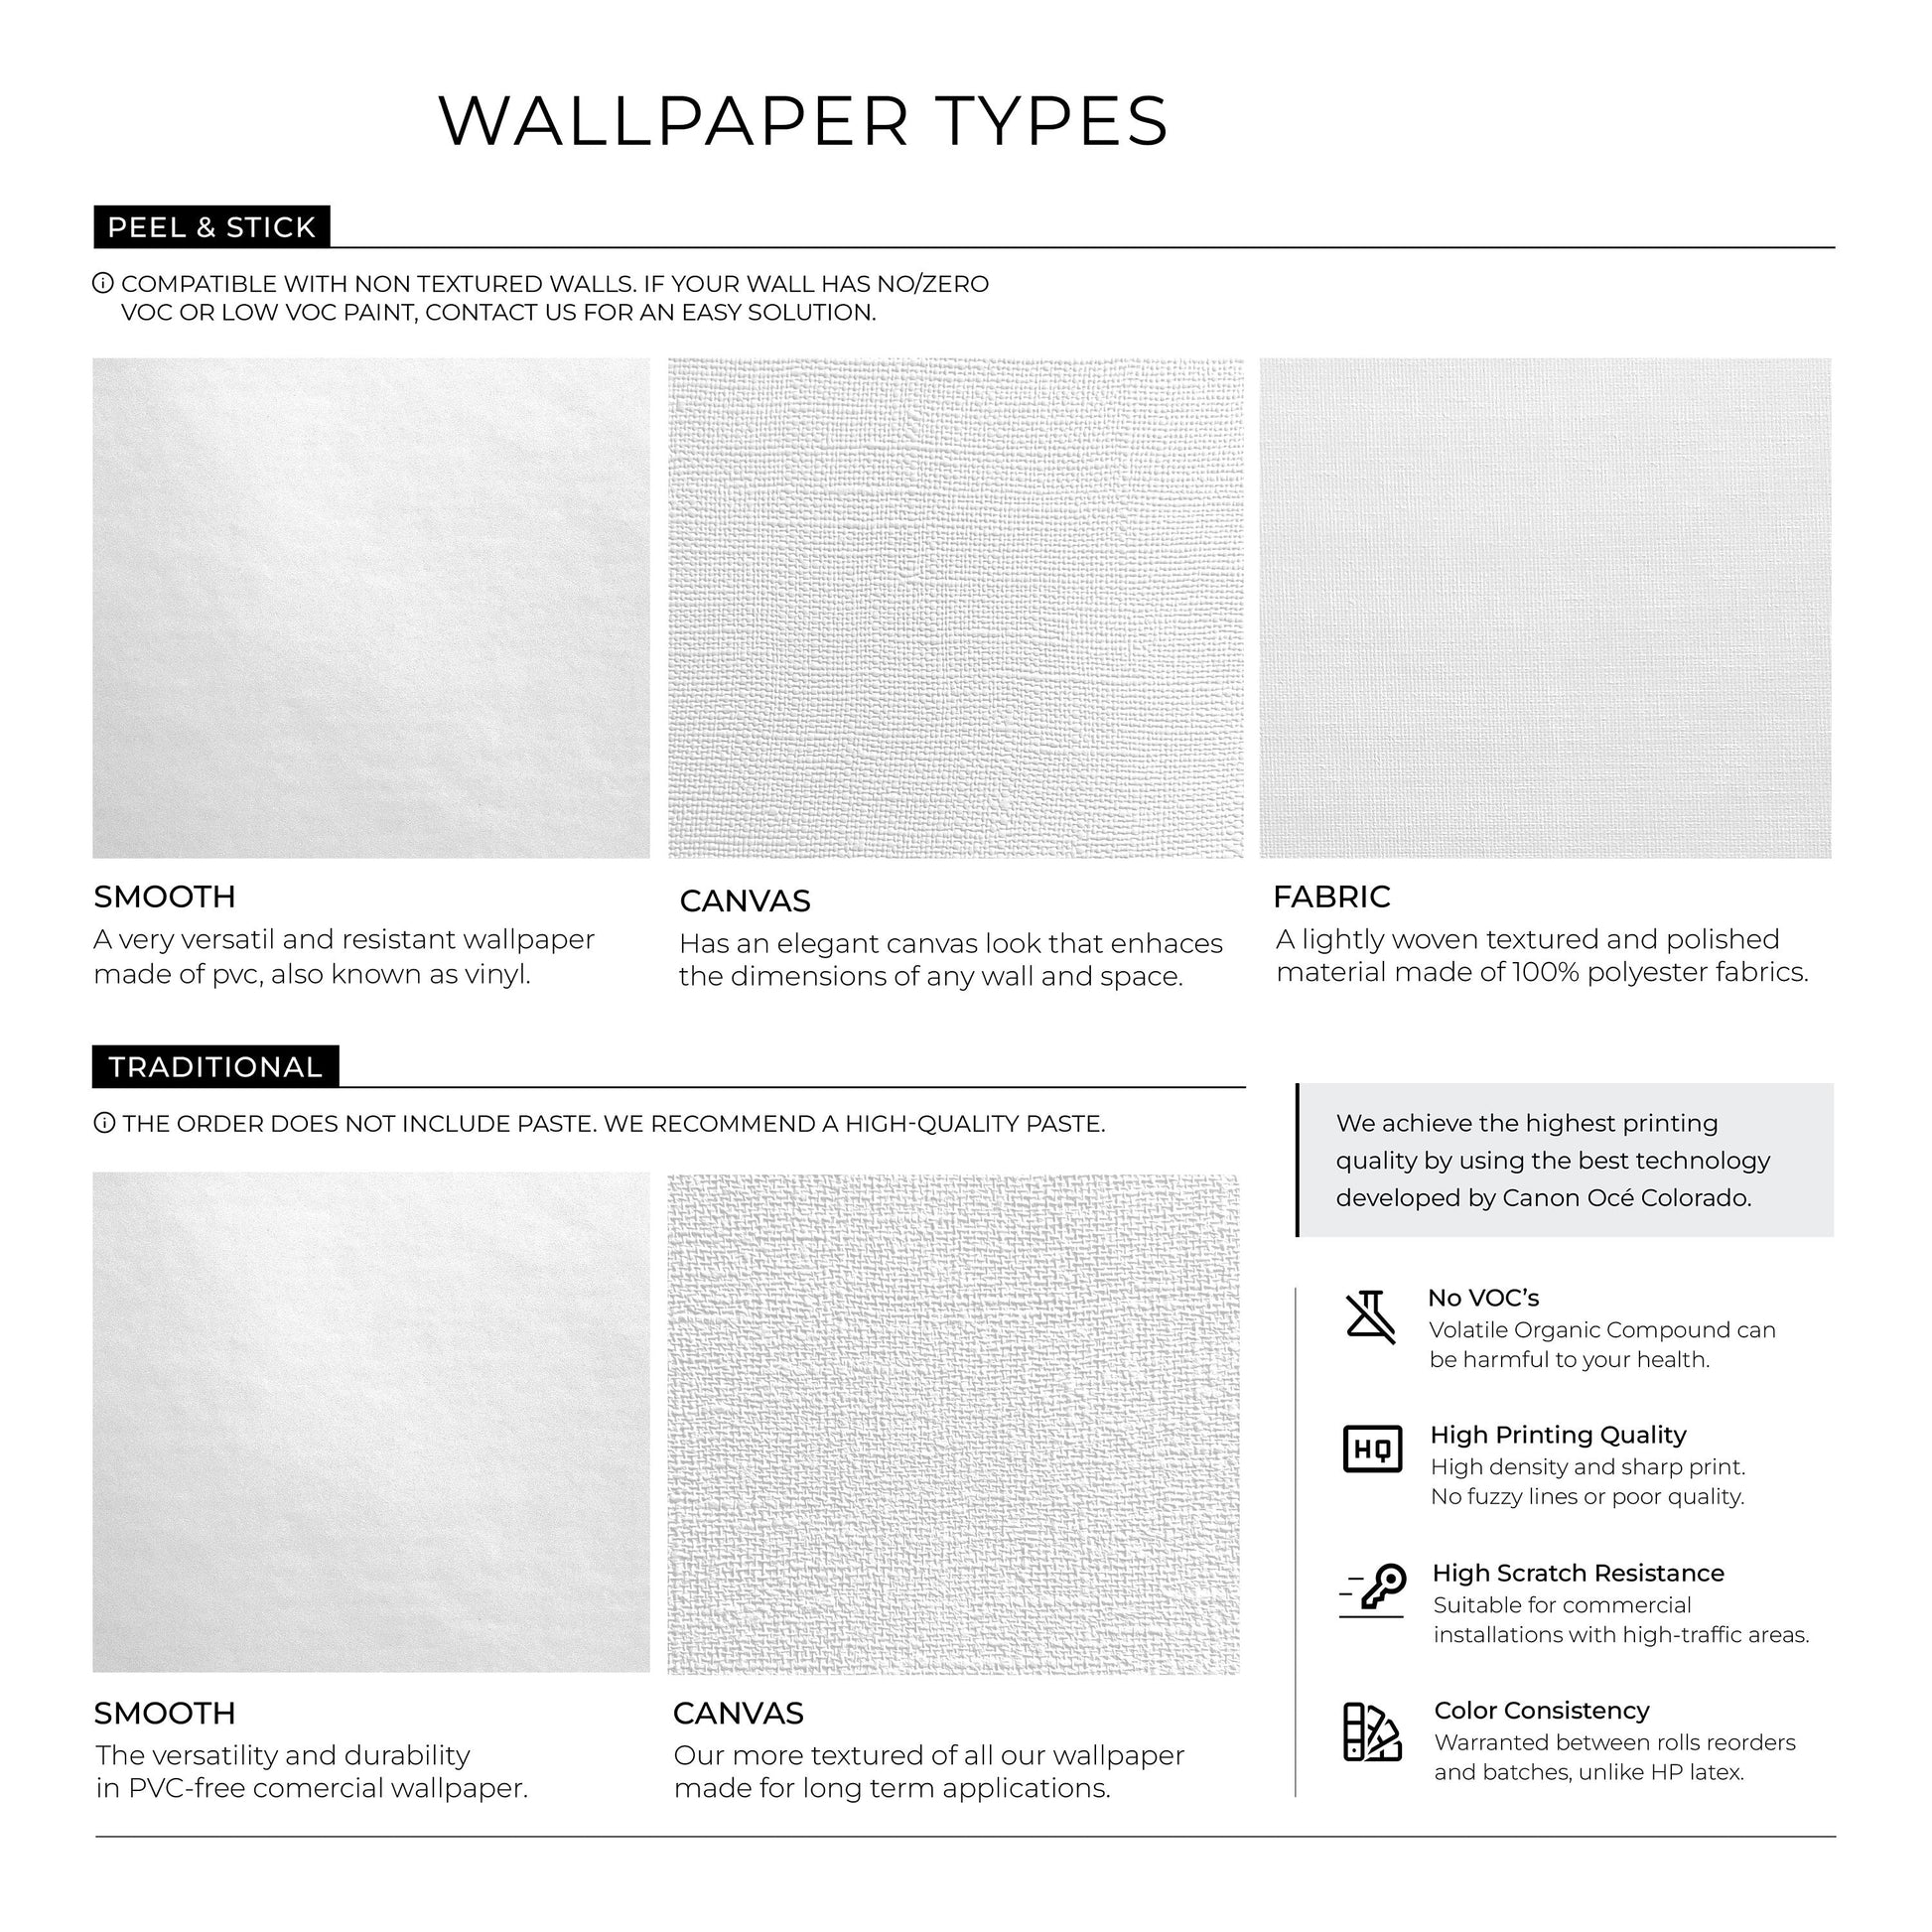 Bono Color Wallpaper / Solid Color / Peel and Stick Wallpaper Removable Wallpaper Home Decor Wall Art Wall Decor Room Decor - D423